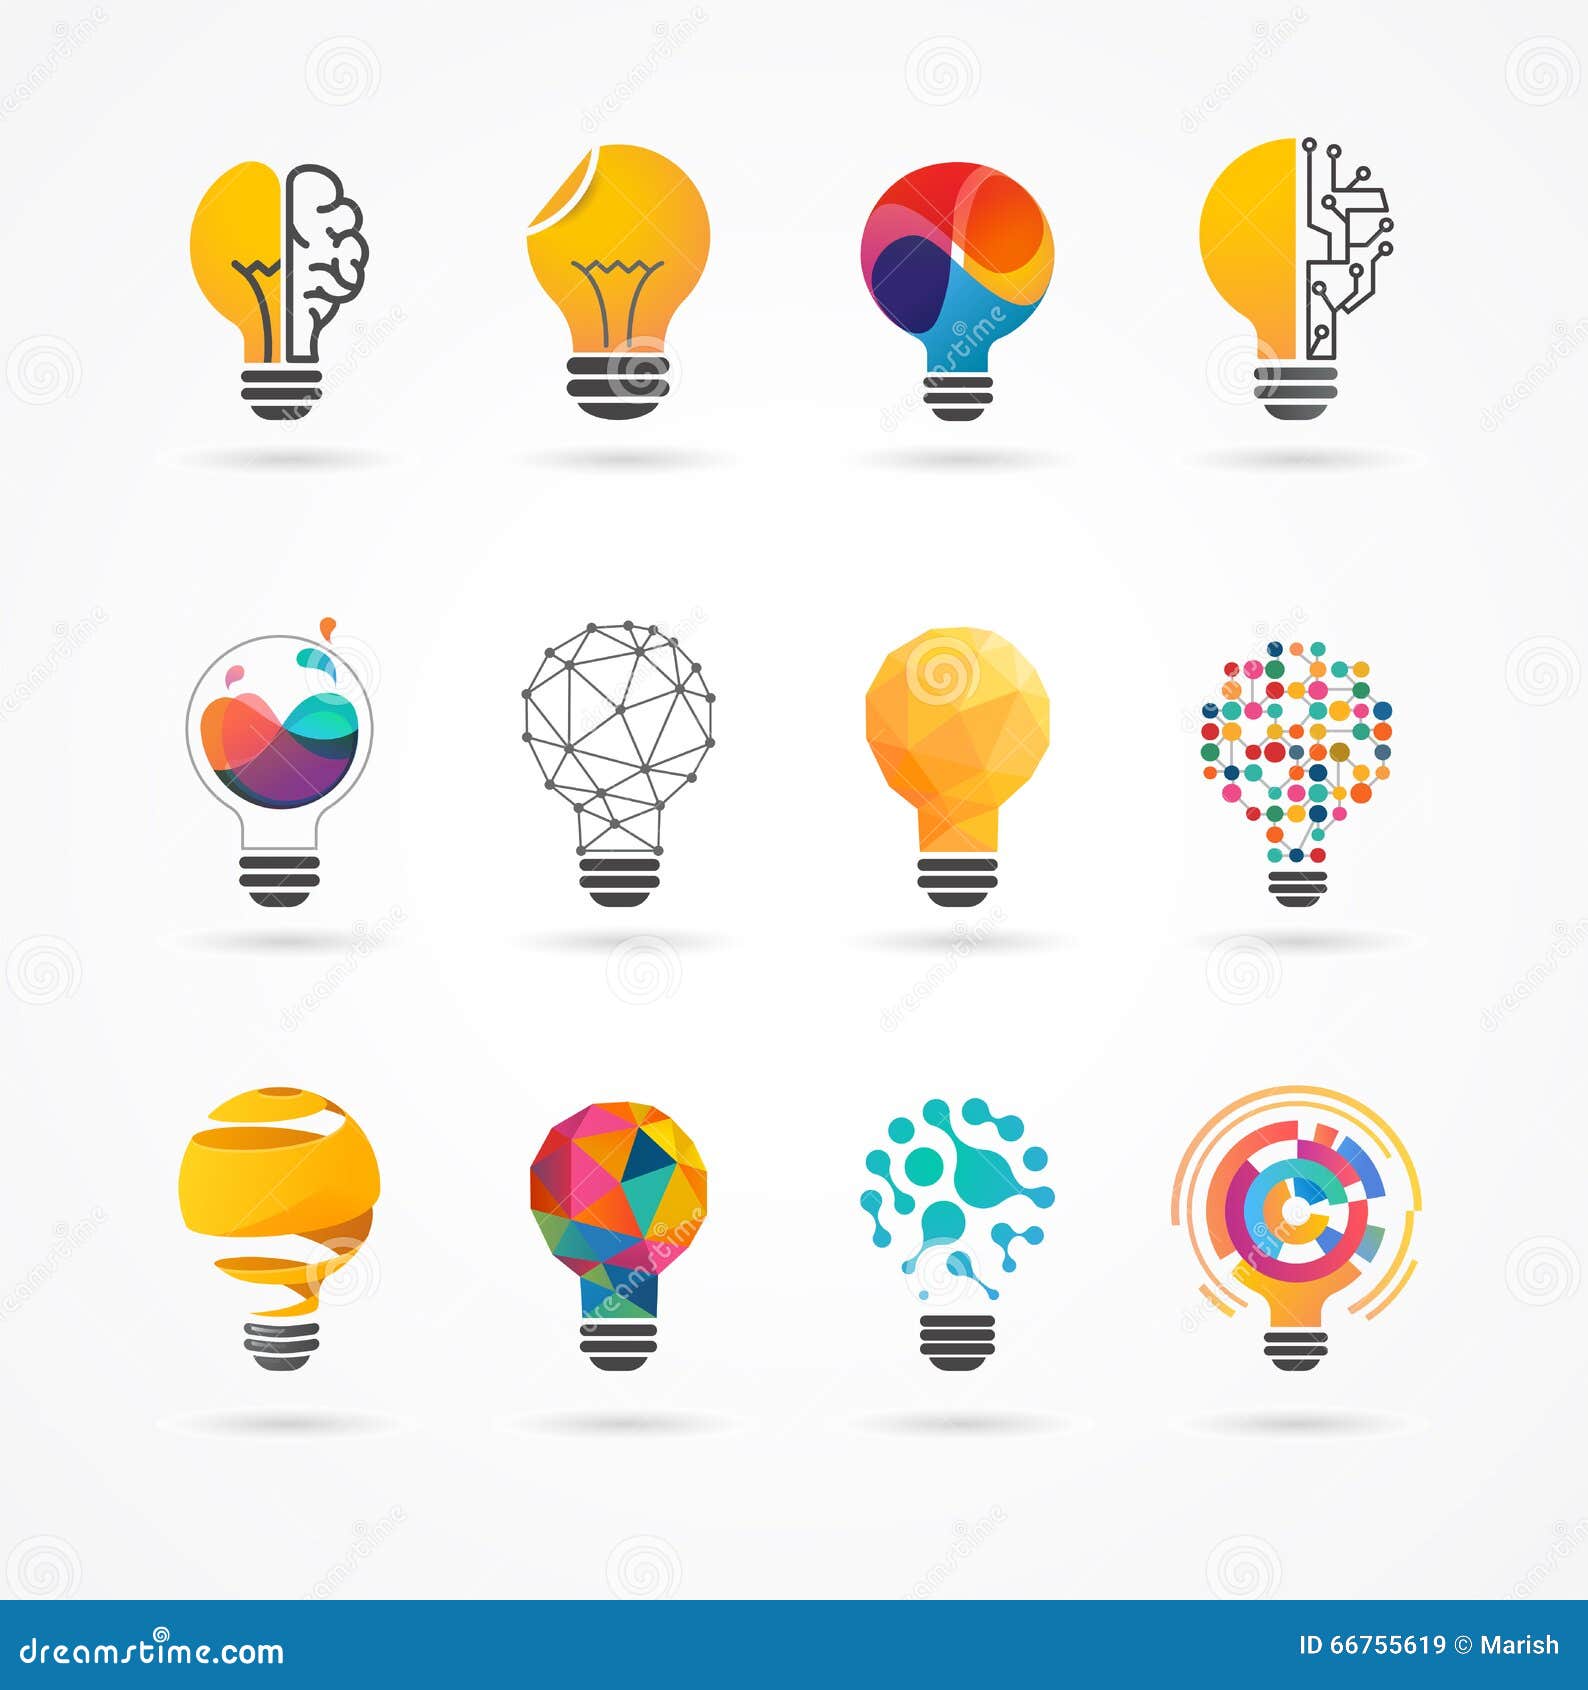 light bulb - idea, creative, technology icons